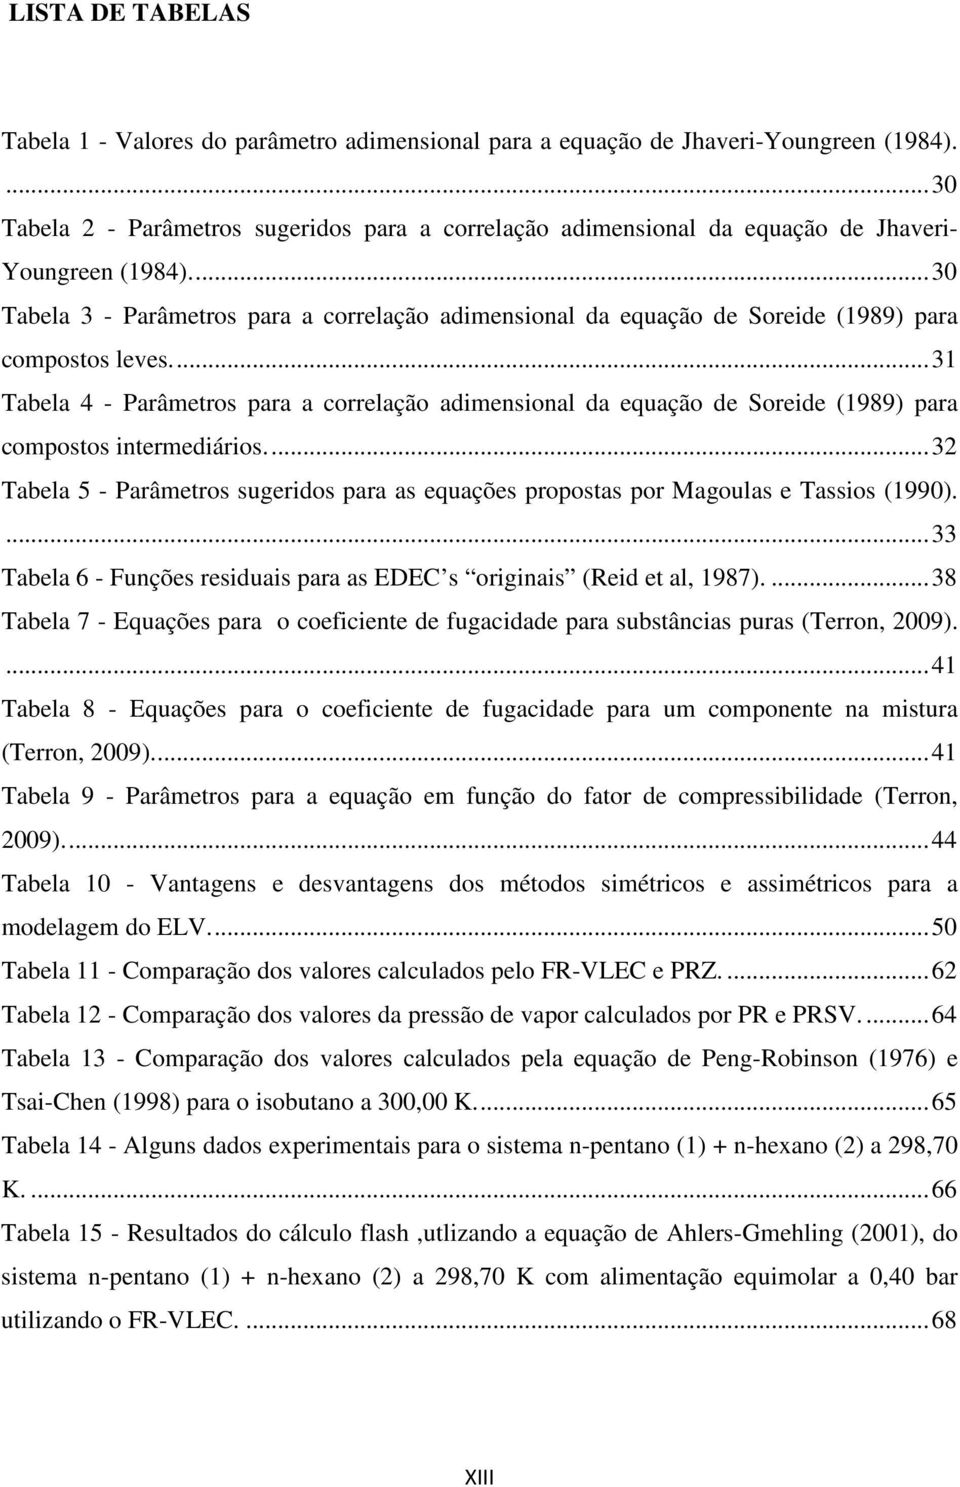 ... 31 Tabela 4 - Parâetros para a correlação adensonal da equação de Sorede (1989) para copostos nteredáros.... 3 Tabela 5 - Parâetros sugerdos para as equações propostas por Magoulas e Tassos (1990).